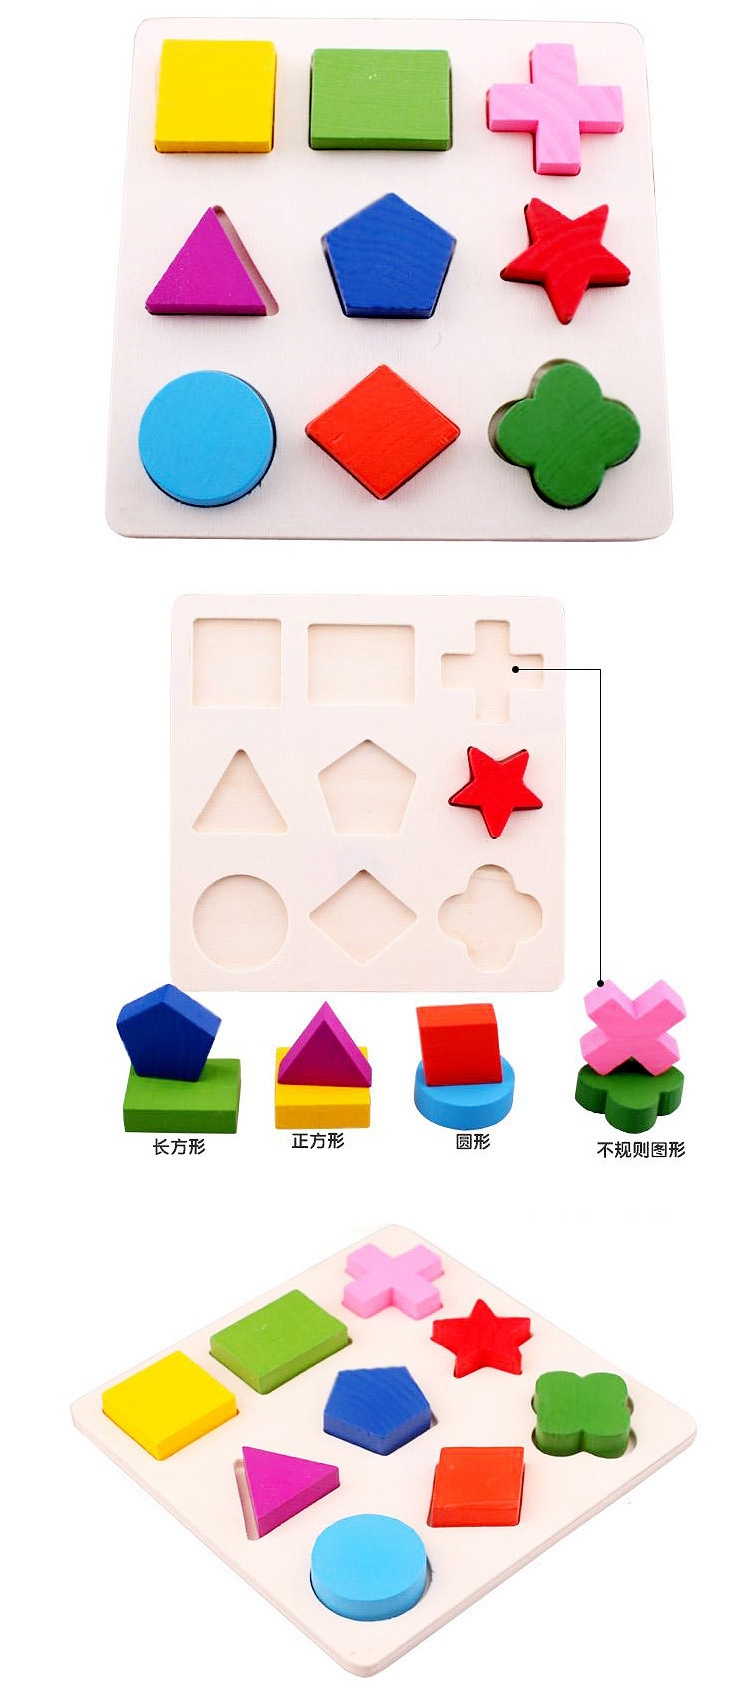 Gỗ ba chiều ghép hình hình học tấm đố của ba bảng màu mầm non đồ chơi giáo dục nhận thức